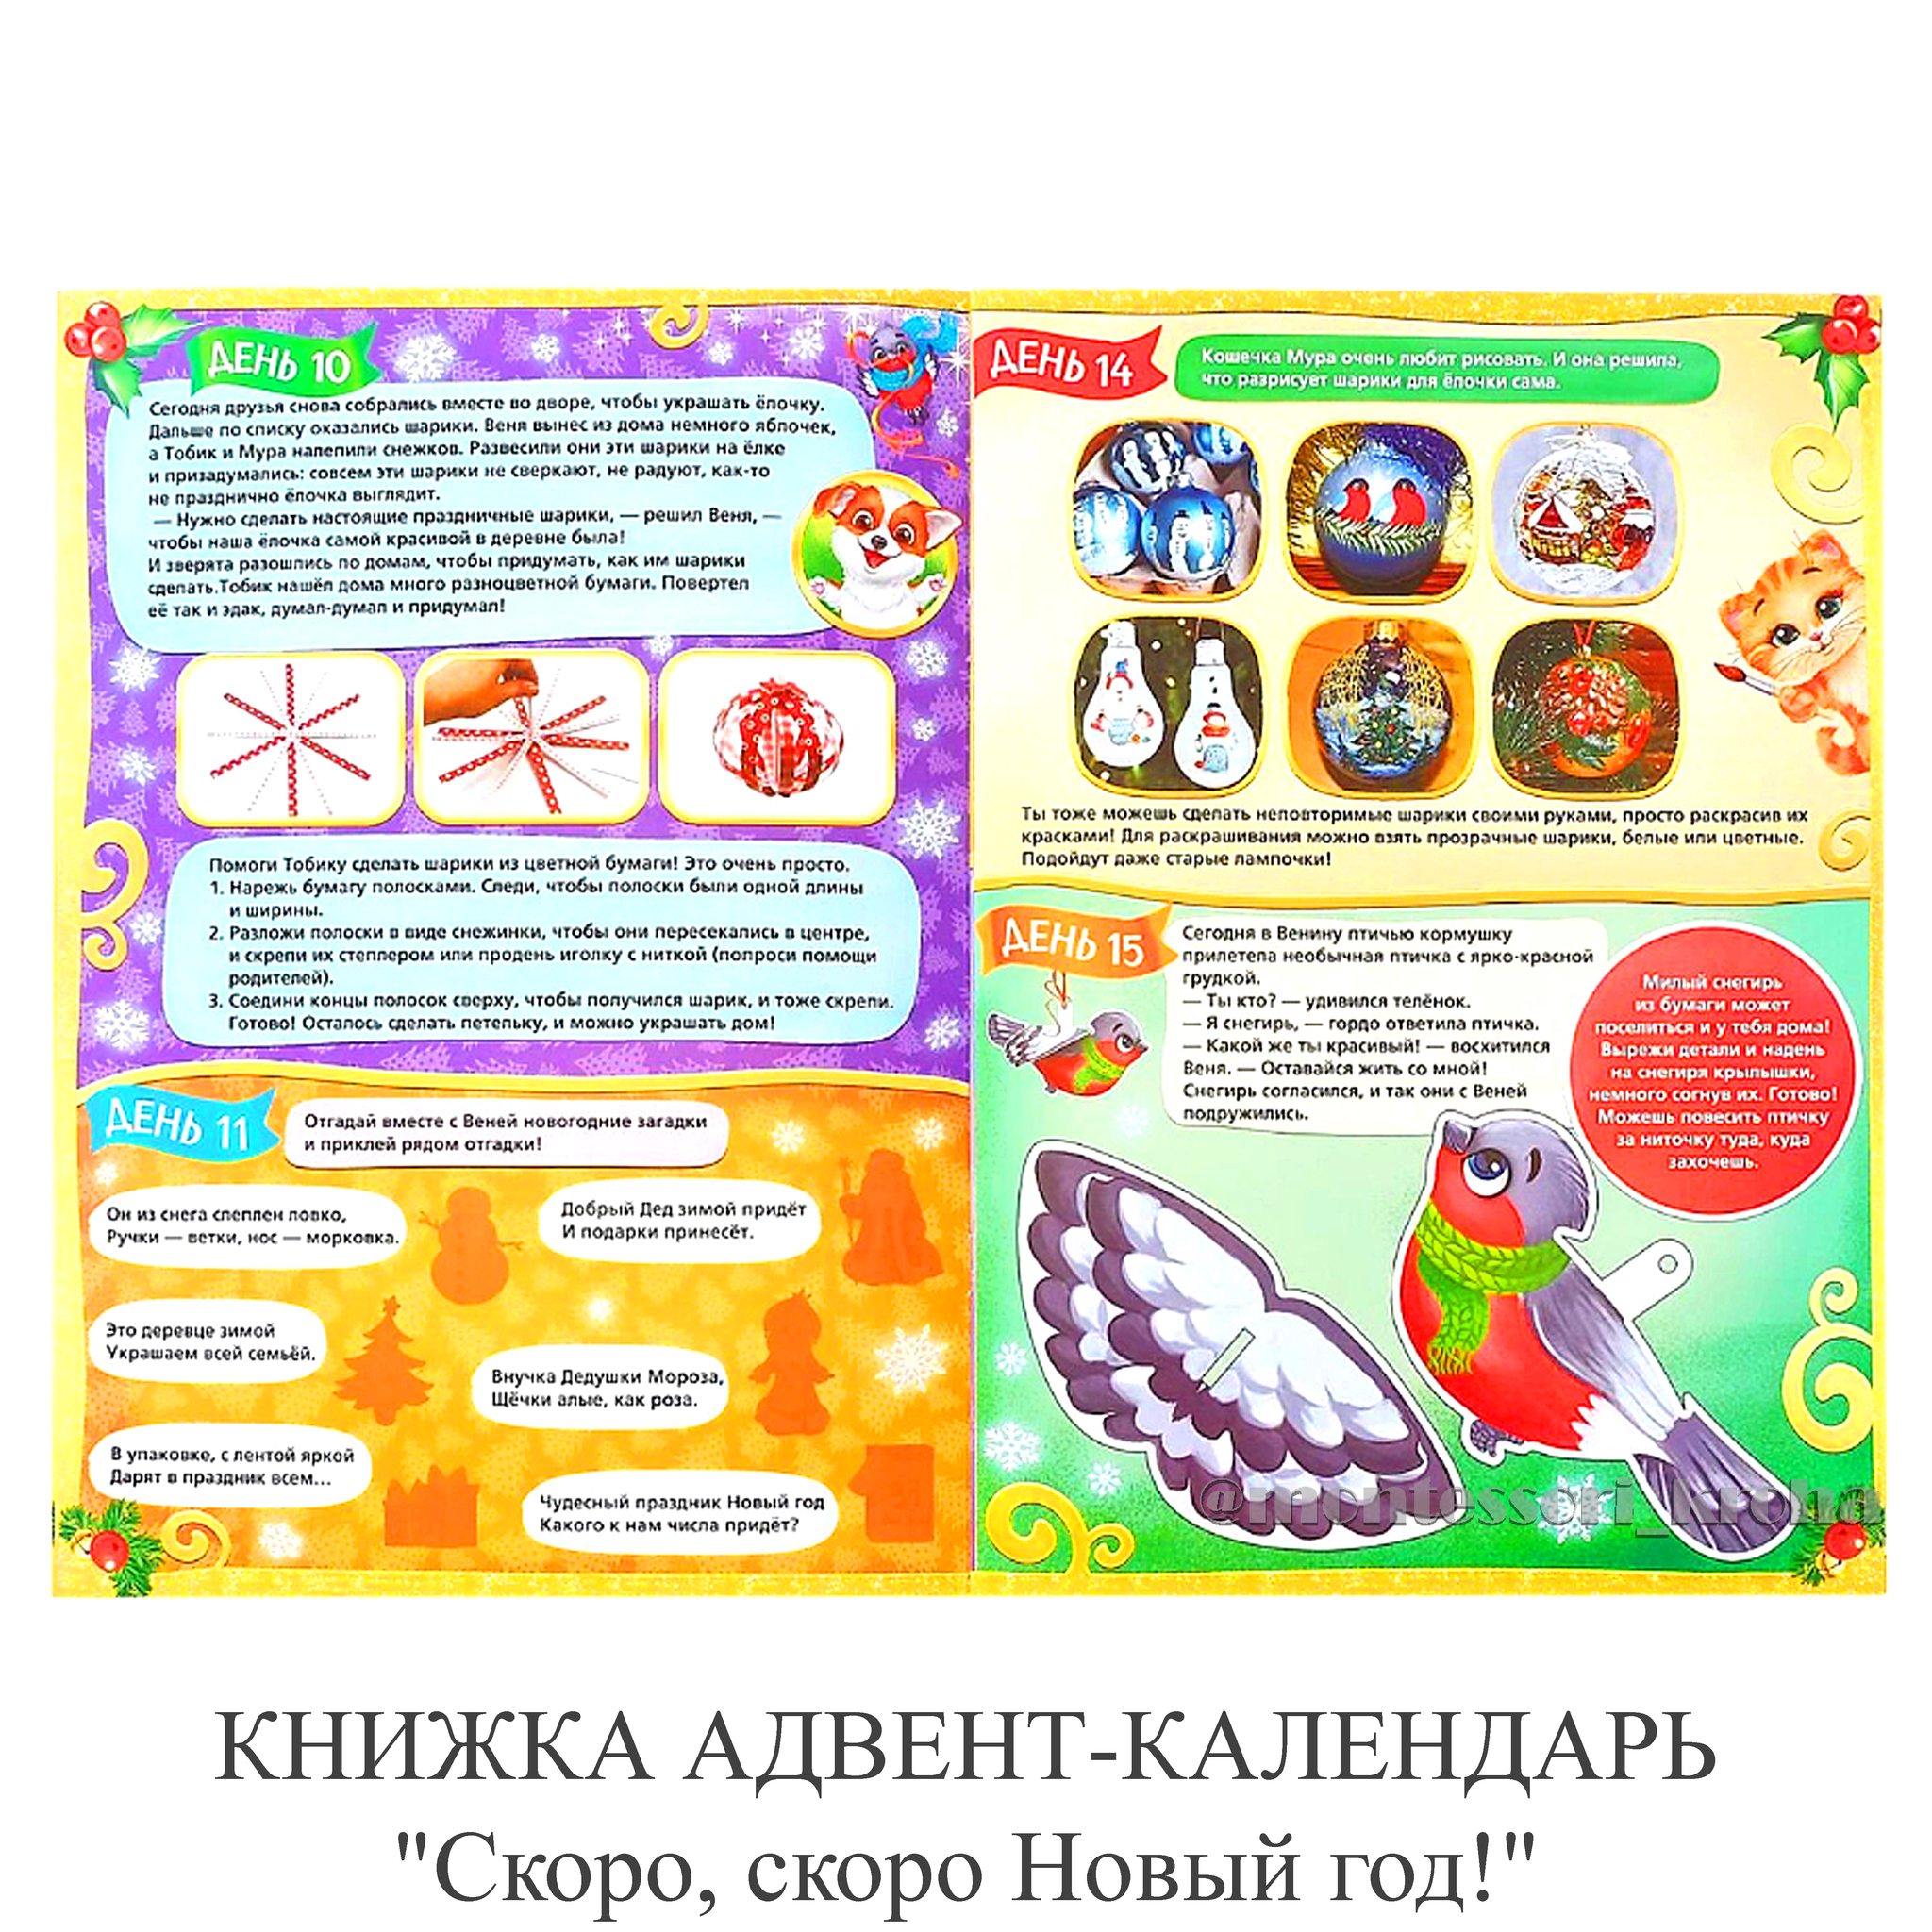 Адвент-календарь для детей своими руками: шаблоны для печати, идеи для заданий и подарков